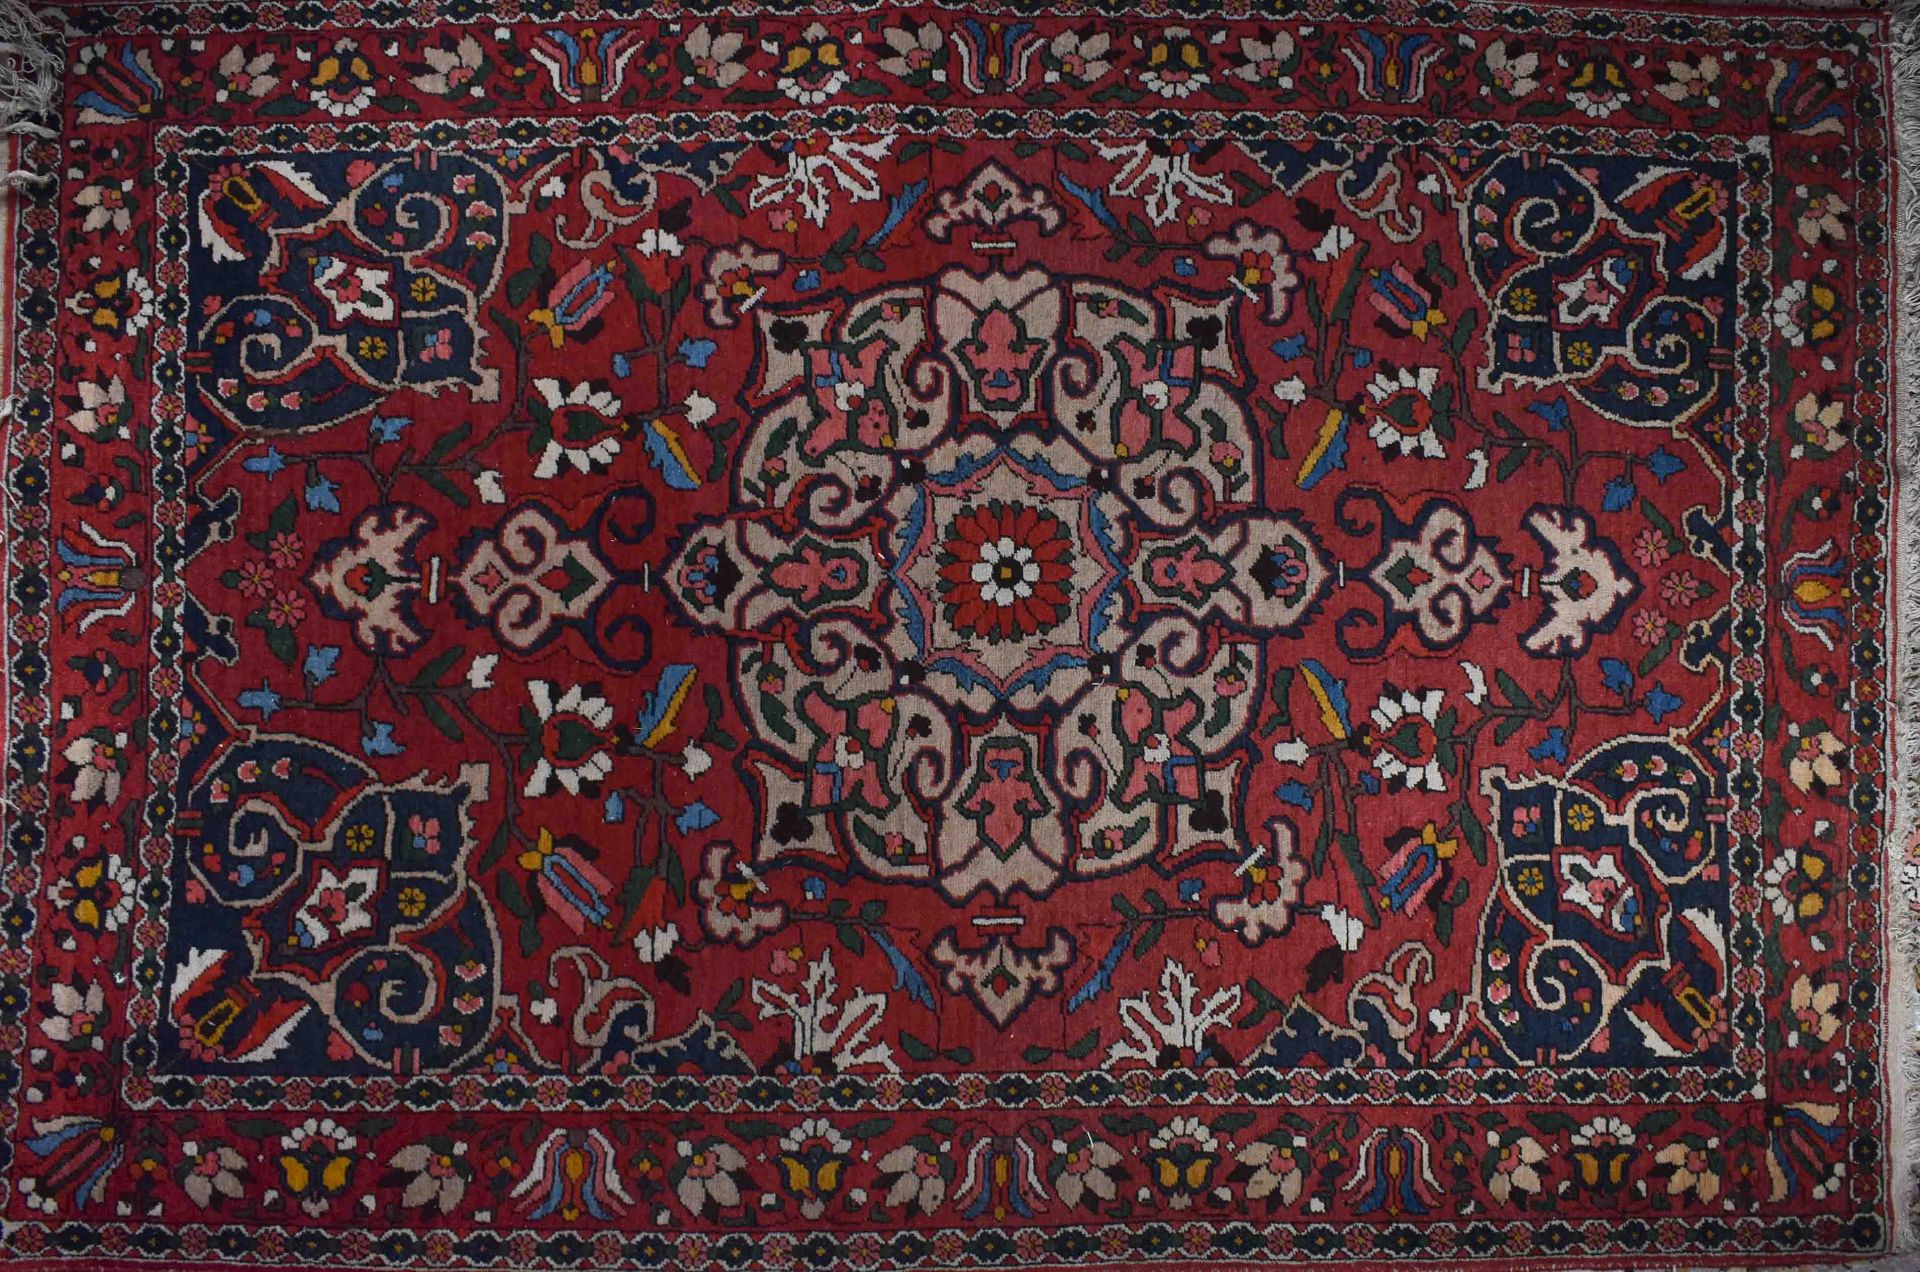 Alter Orientalischer Teppich214 cm x 141 cmOld oriental carpet214 cm x 141 cm